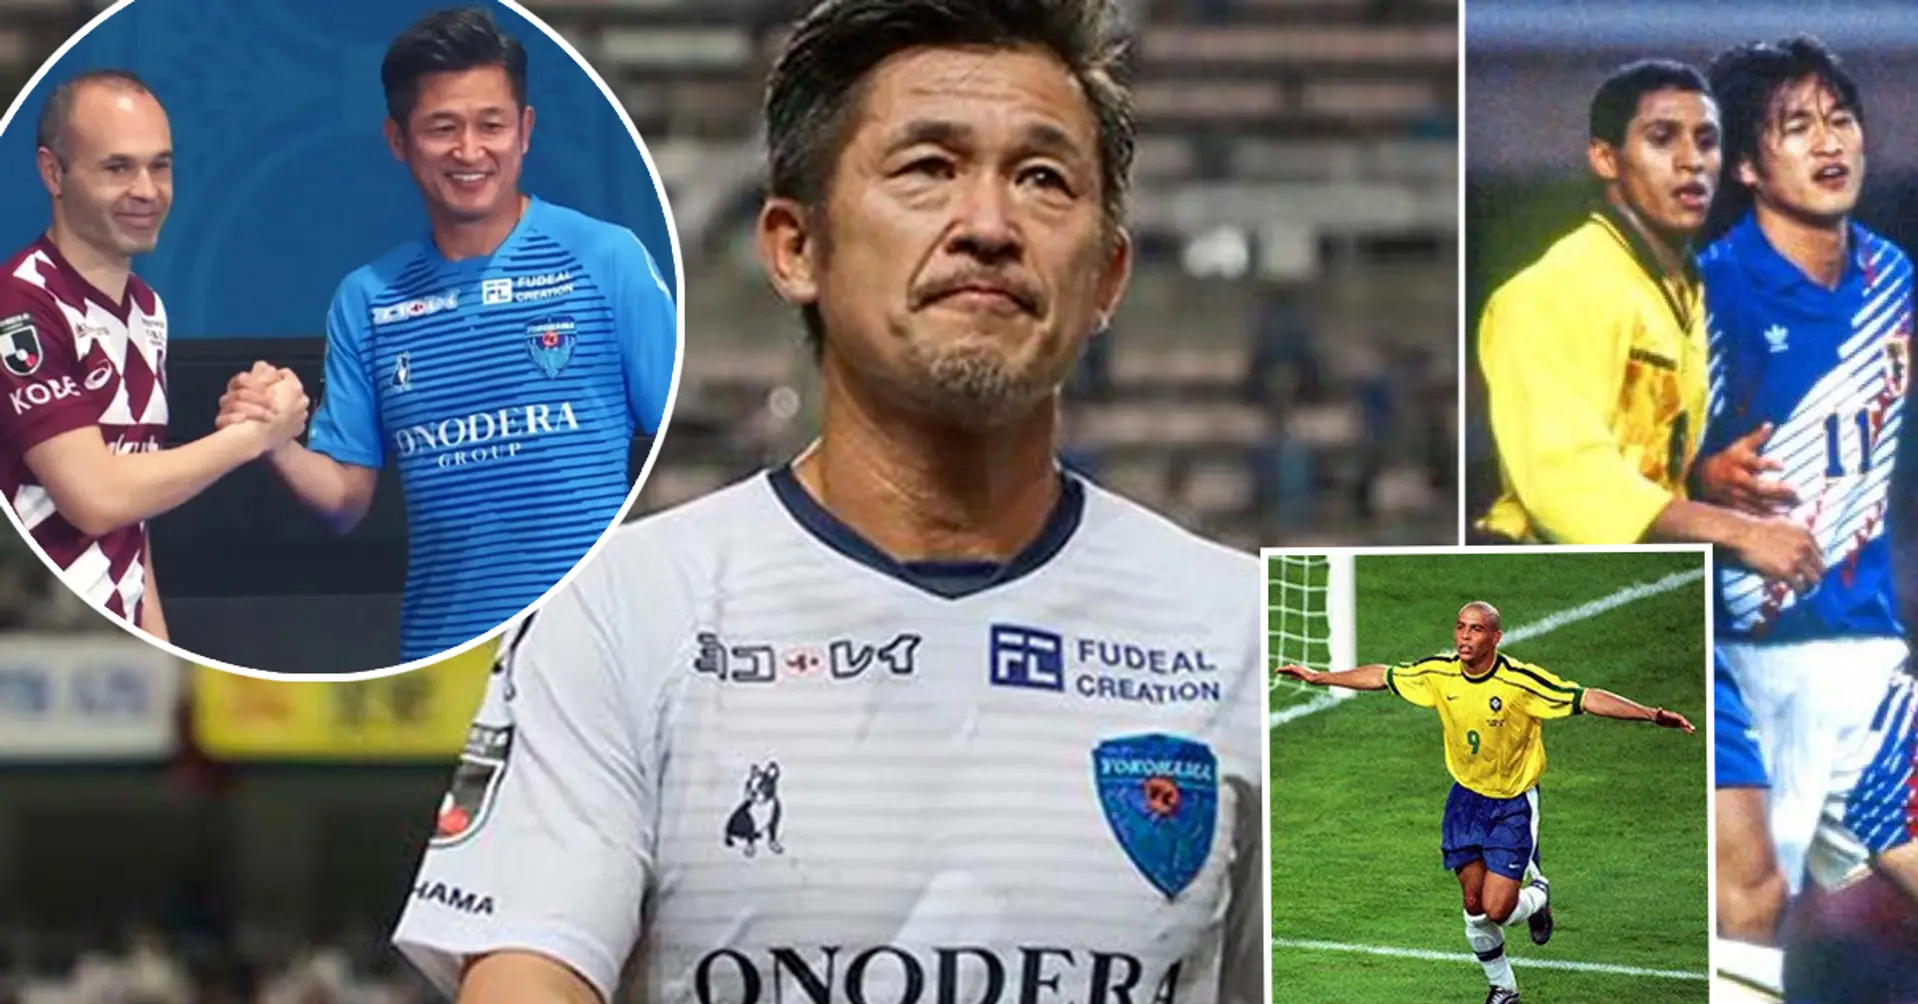 Der 53-jährige Kazuyoshi Miura unterzeichnet einen neuen Vertrag. Es stellt sich heraus, dass er sogar gegen Ronaldo gespielt hat